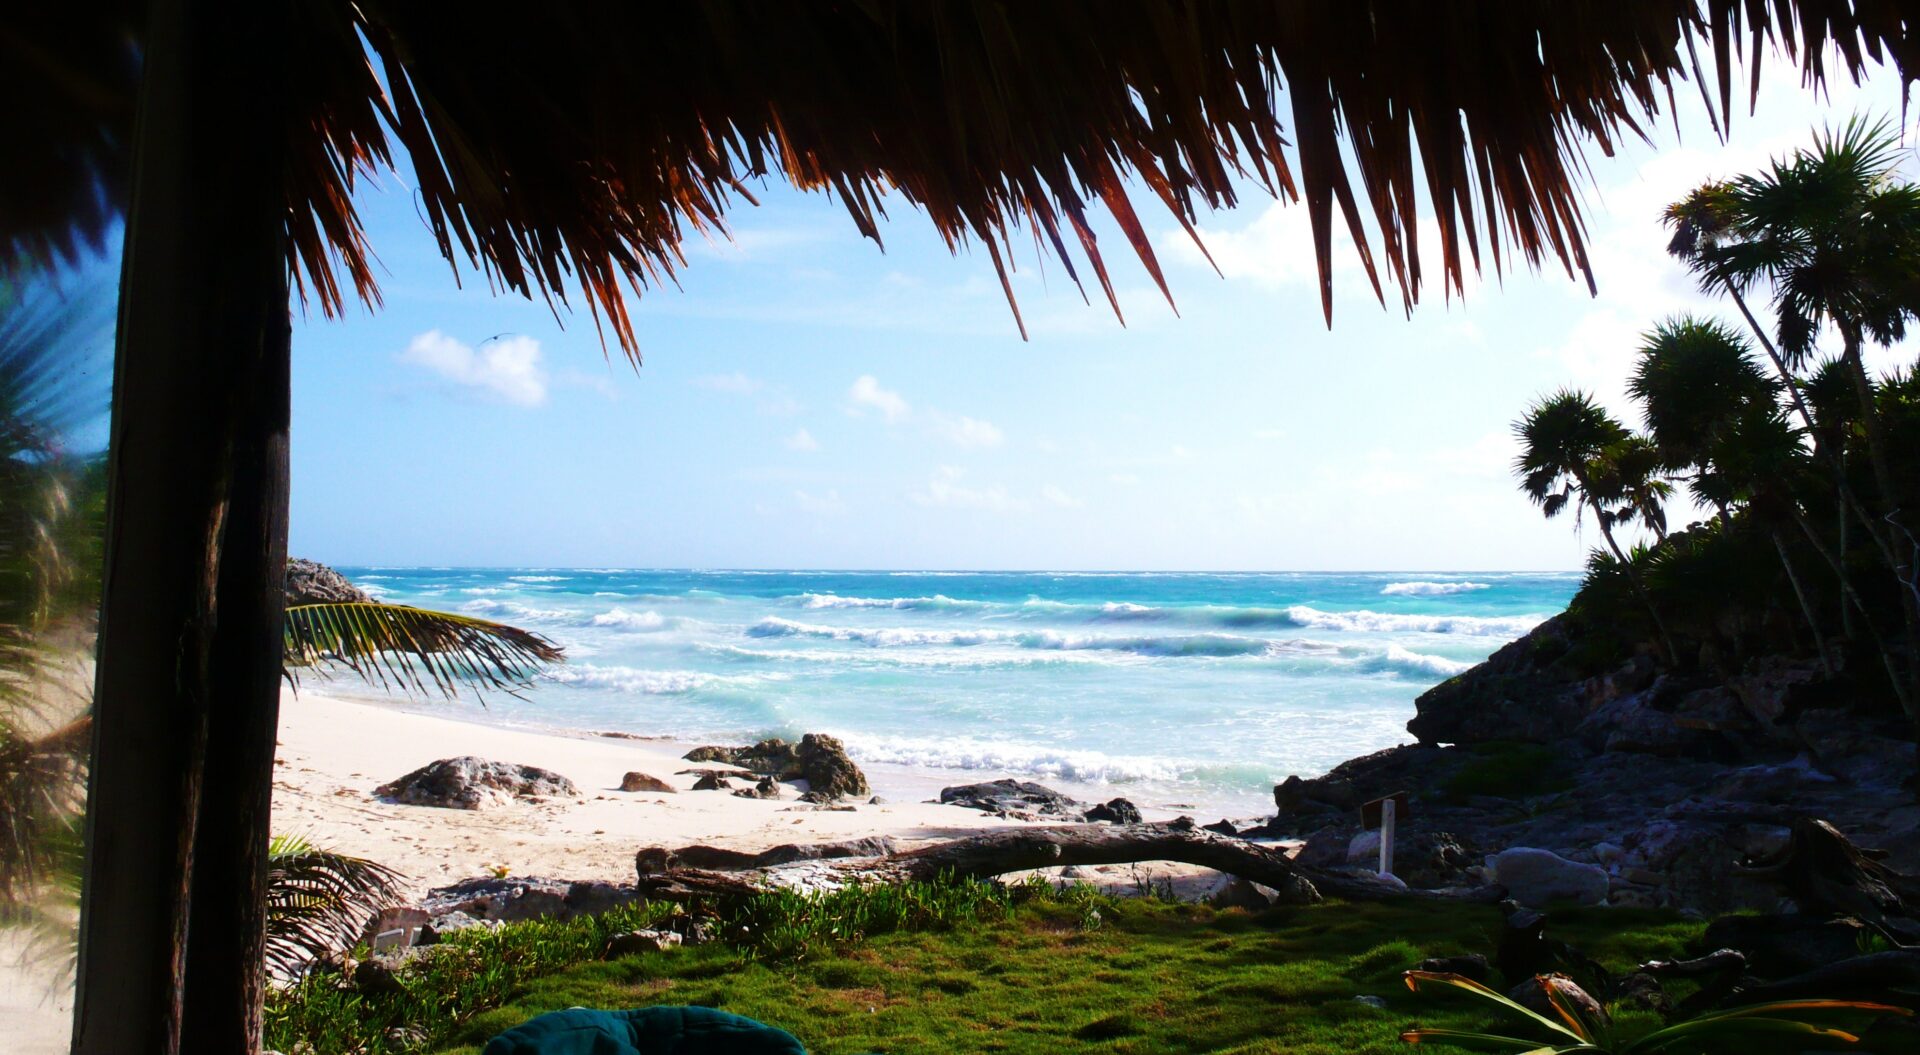 289 de 290 playas mexicanas están limpias; playa Hermosa, en BC, no pasa la prueba: Cofepris